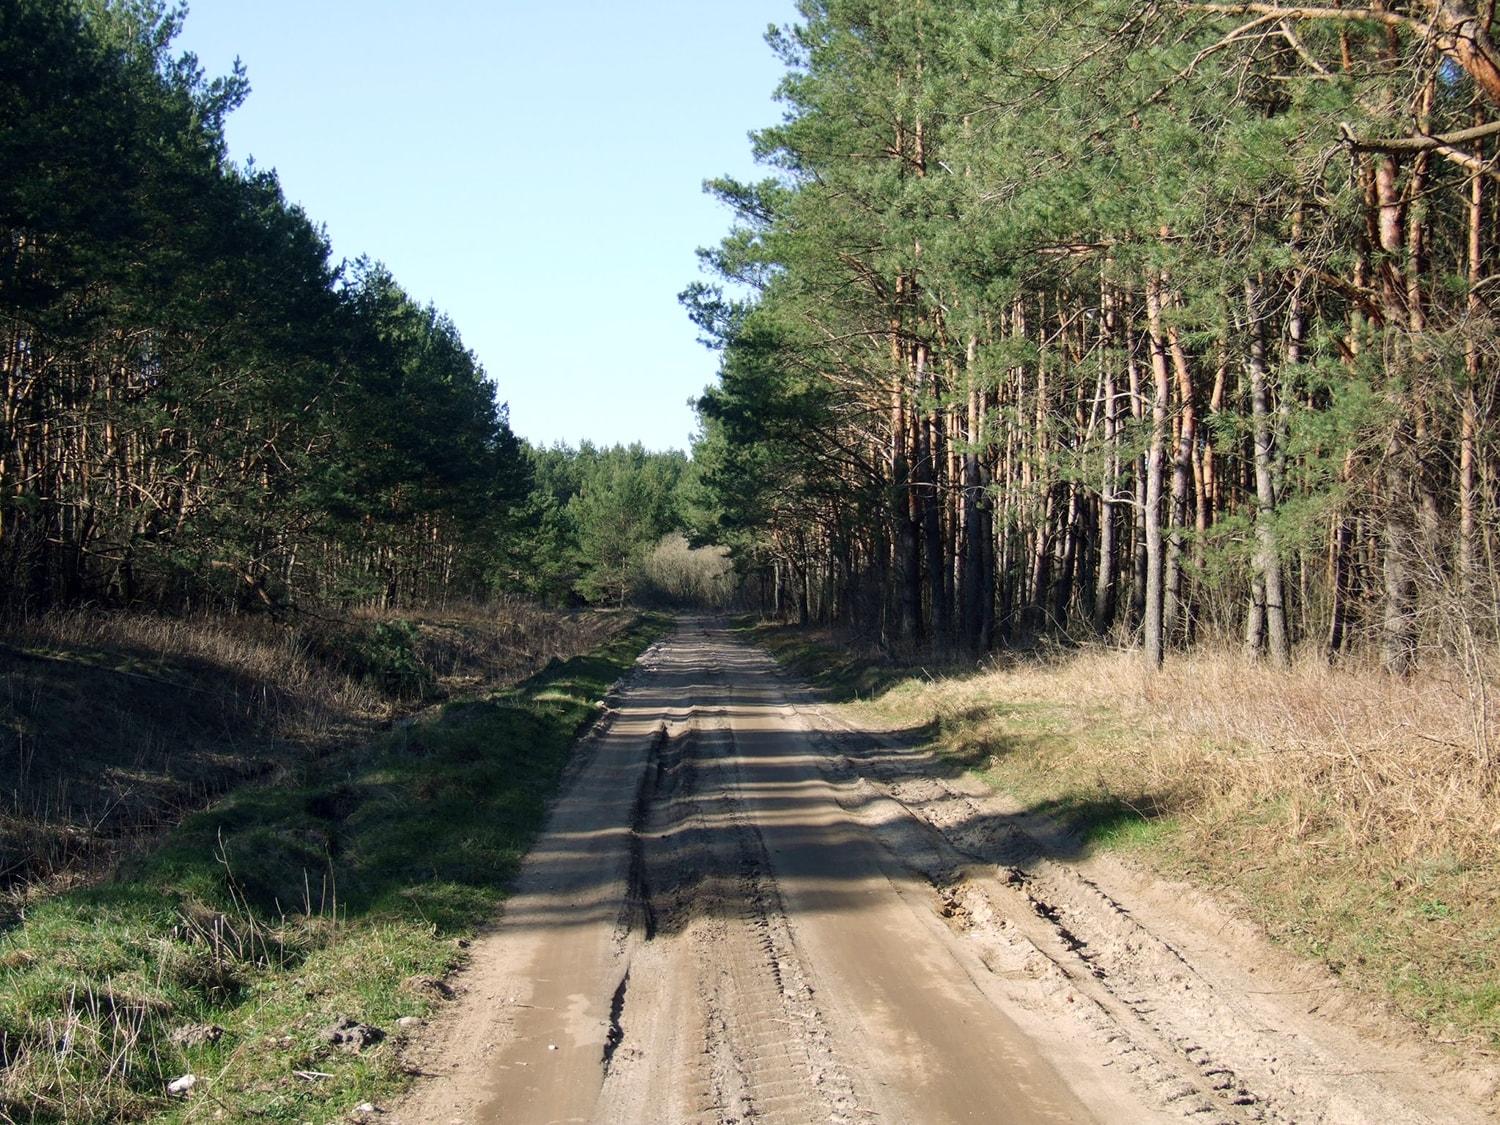 Lėšas miško kelių priežiūrai skirstė komisija / Ukmergės miškų keliai